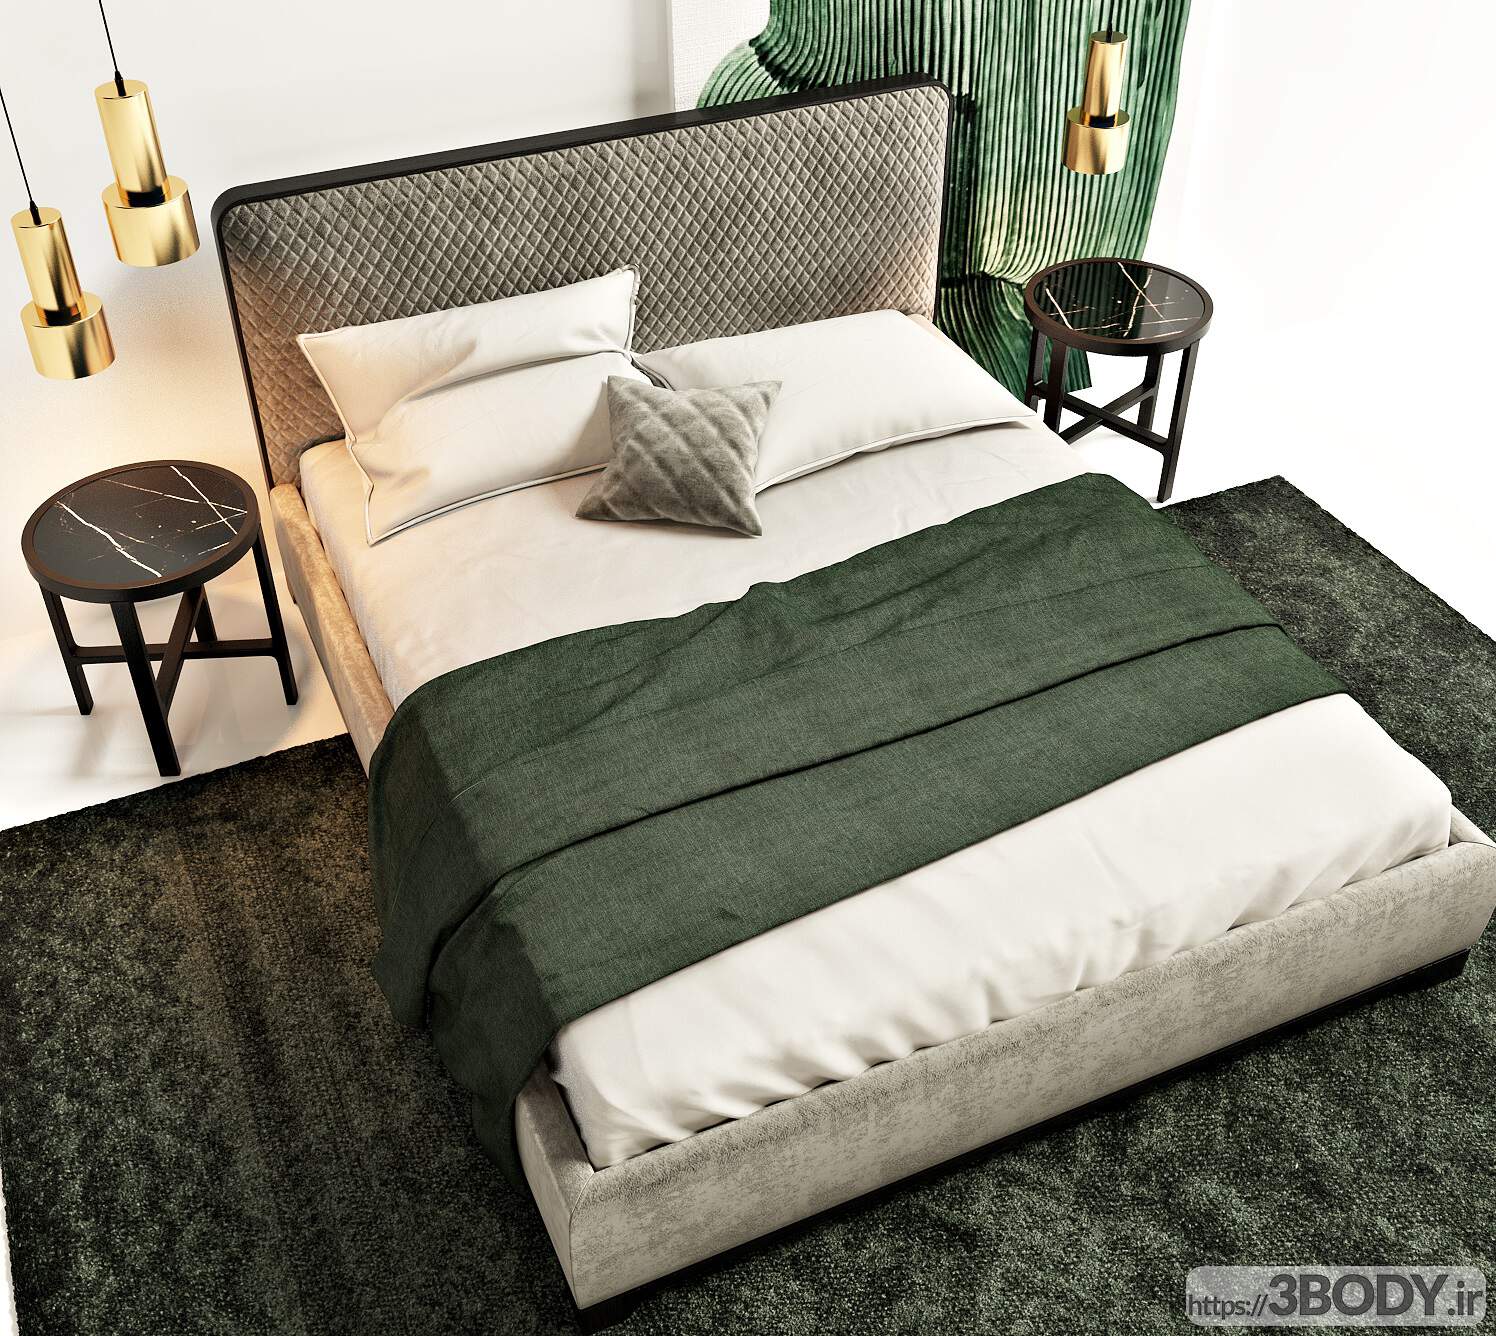 مدل سه بعدی تختخواب عکس 3